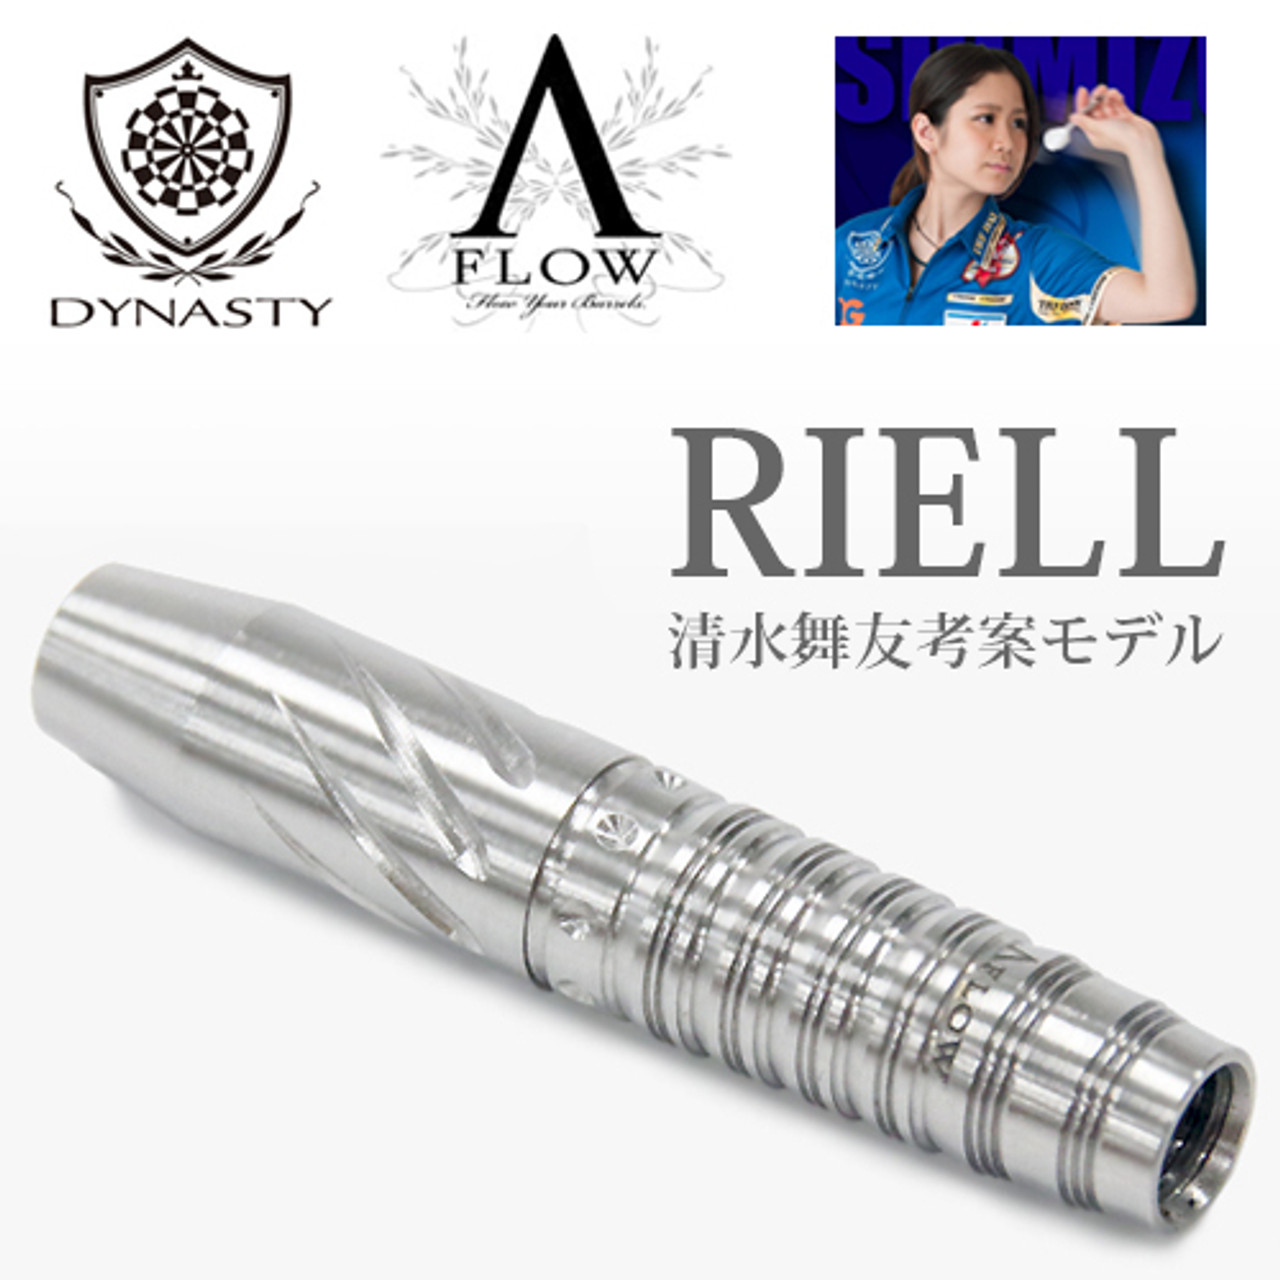 Dynasty A-Flow BL Riell 2ba Soft Tip Darts - 17.5g